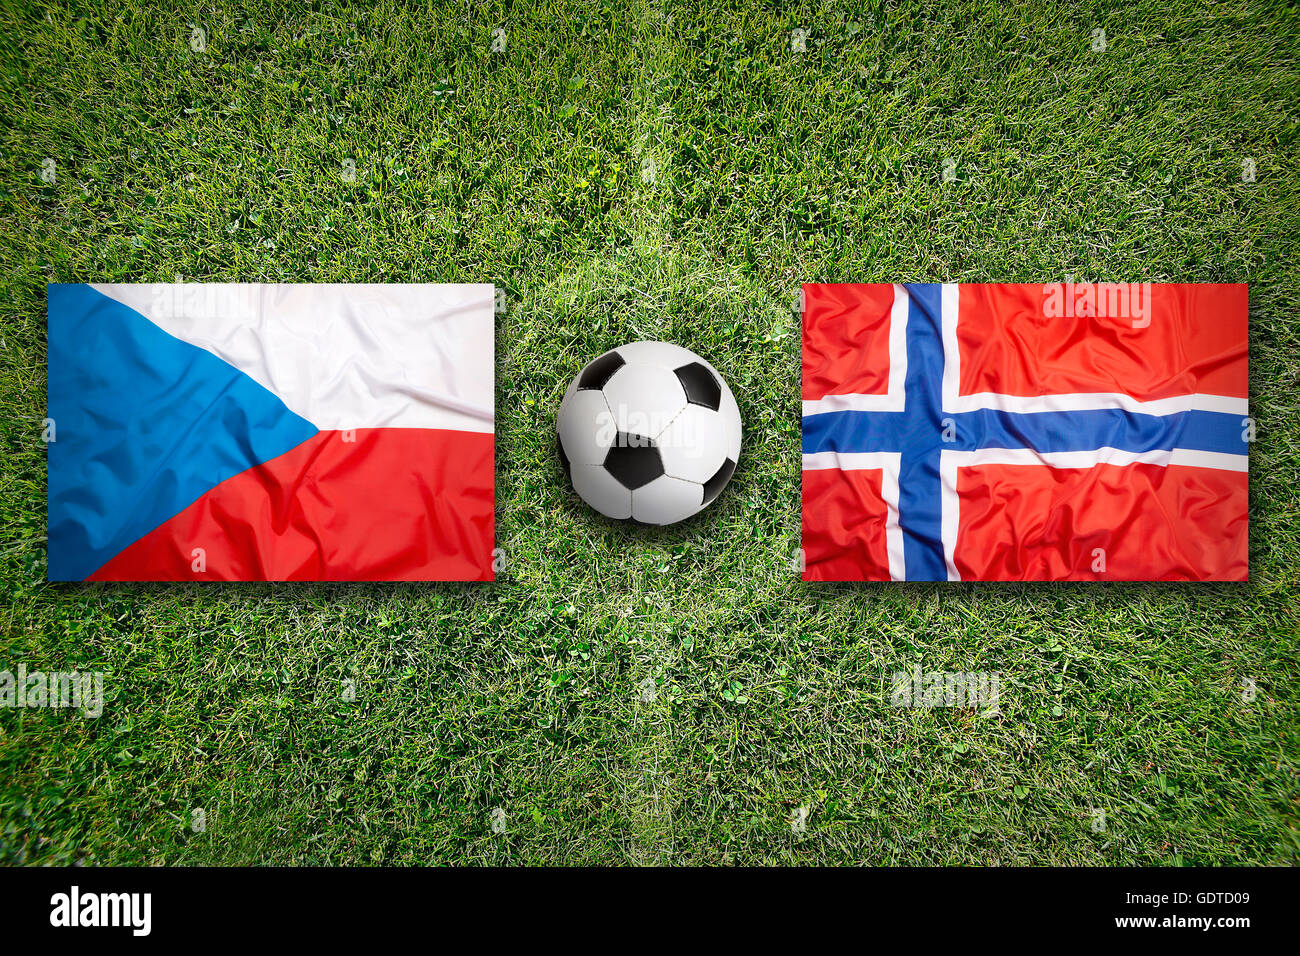 Czech Republic vs. Norway flags on green soccer field Stock Photo